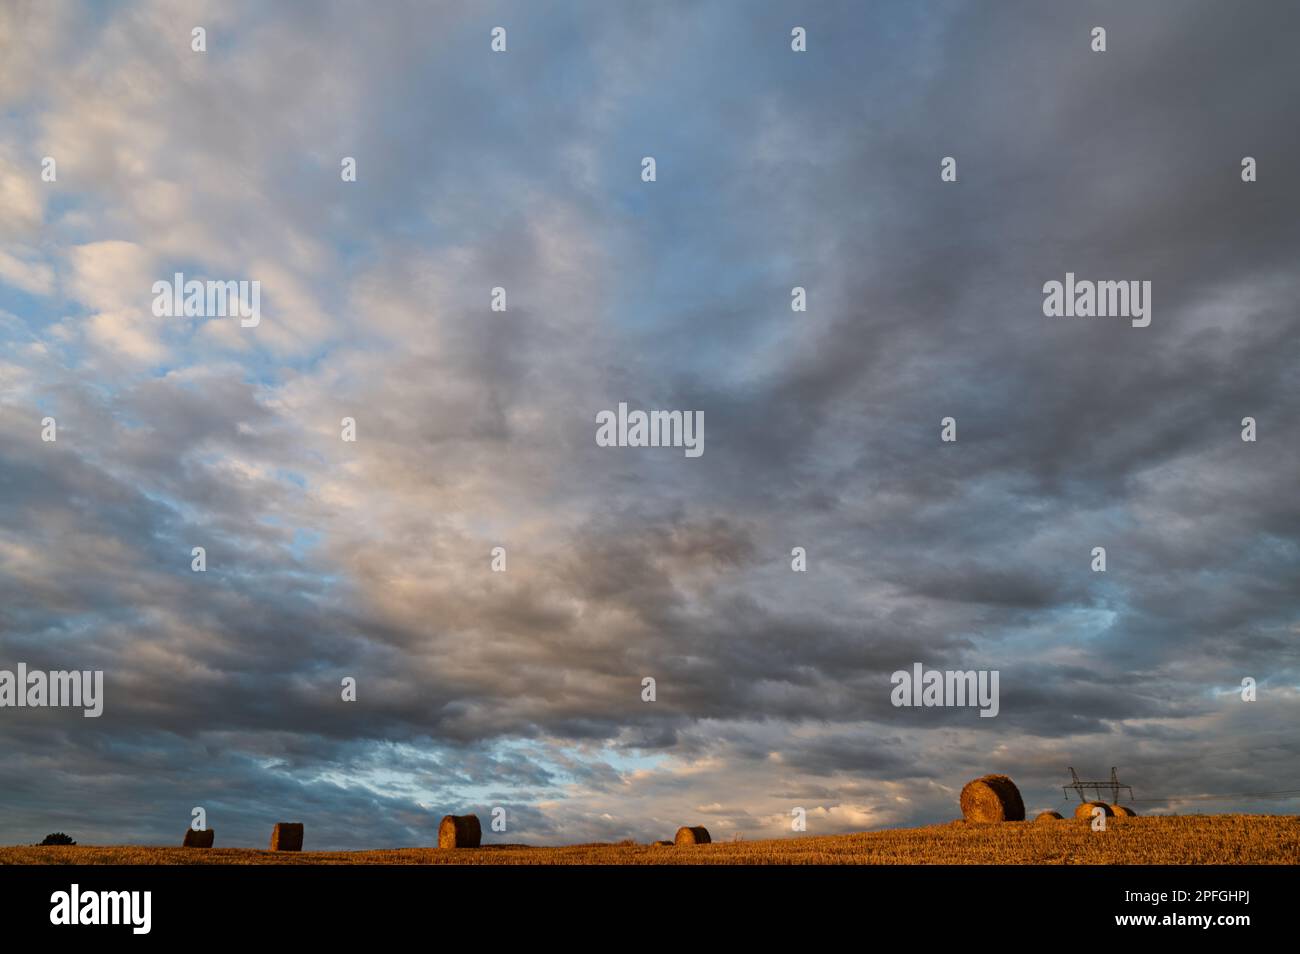 Ciel nuageux sur un champ avec des balles de paille Banque D'Images